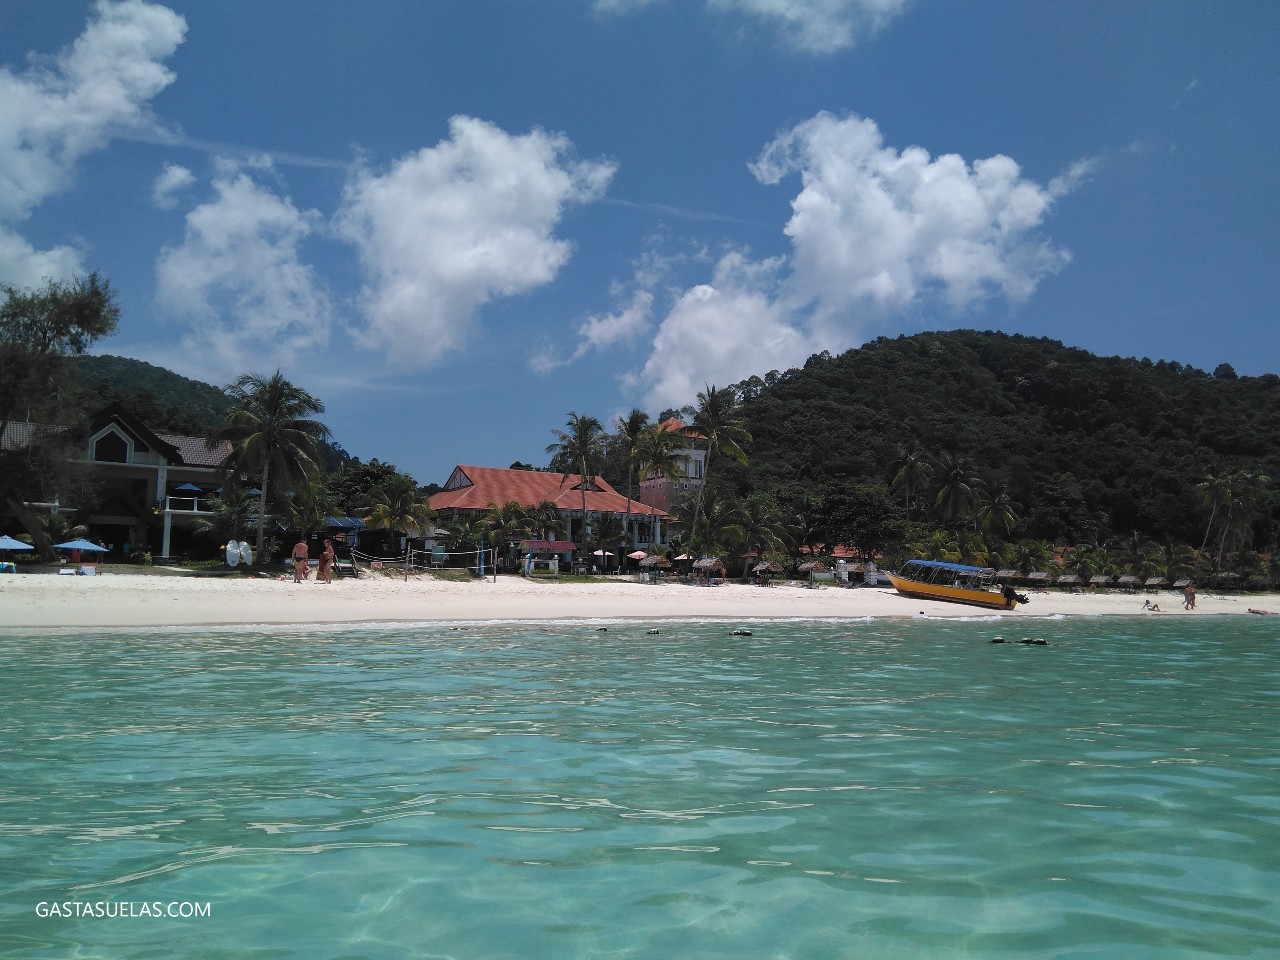 Pulau Redang desde el mar (Malasia)